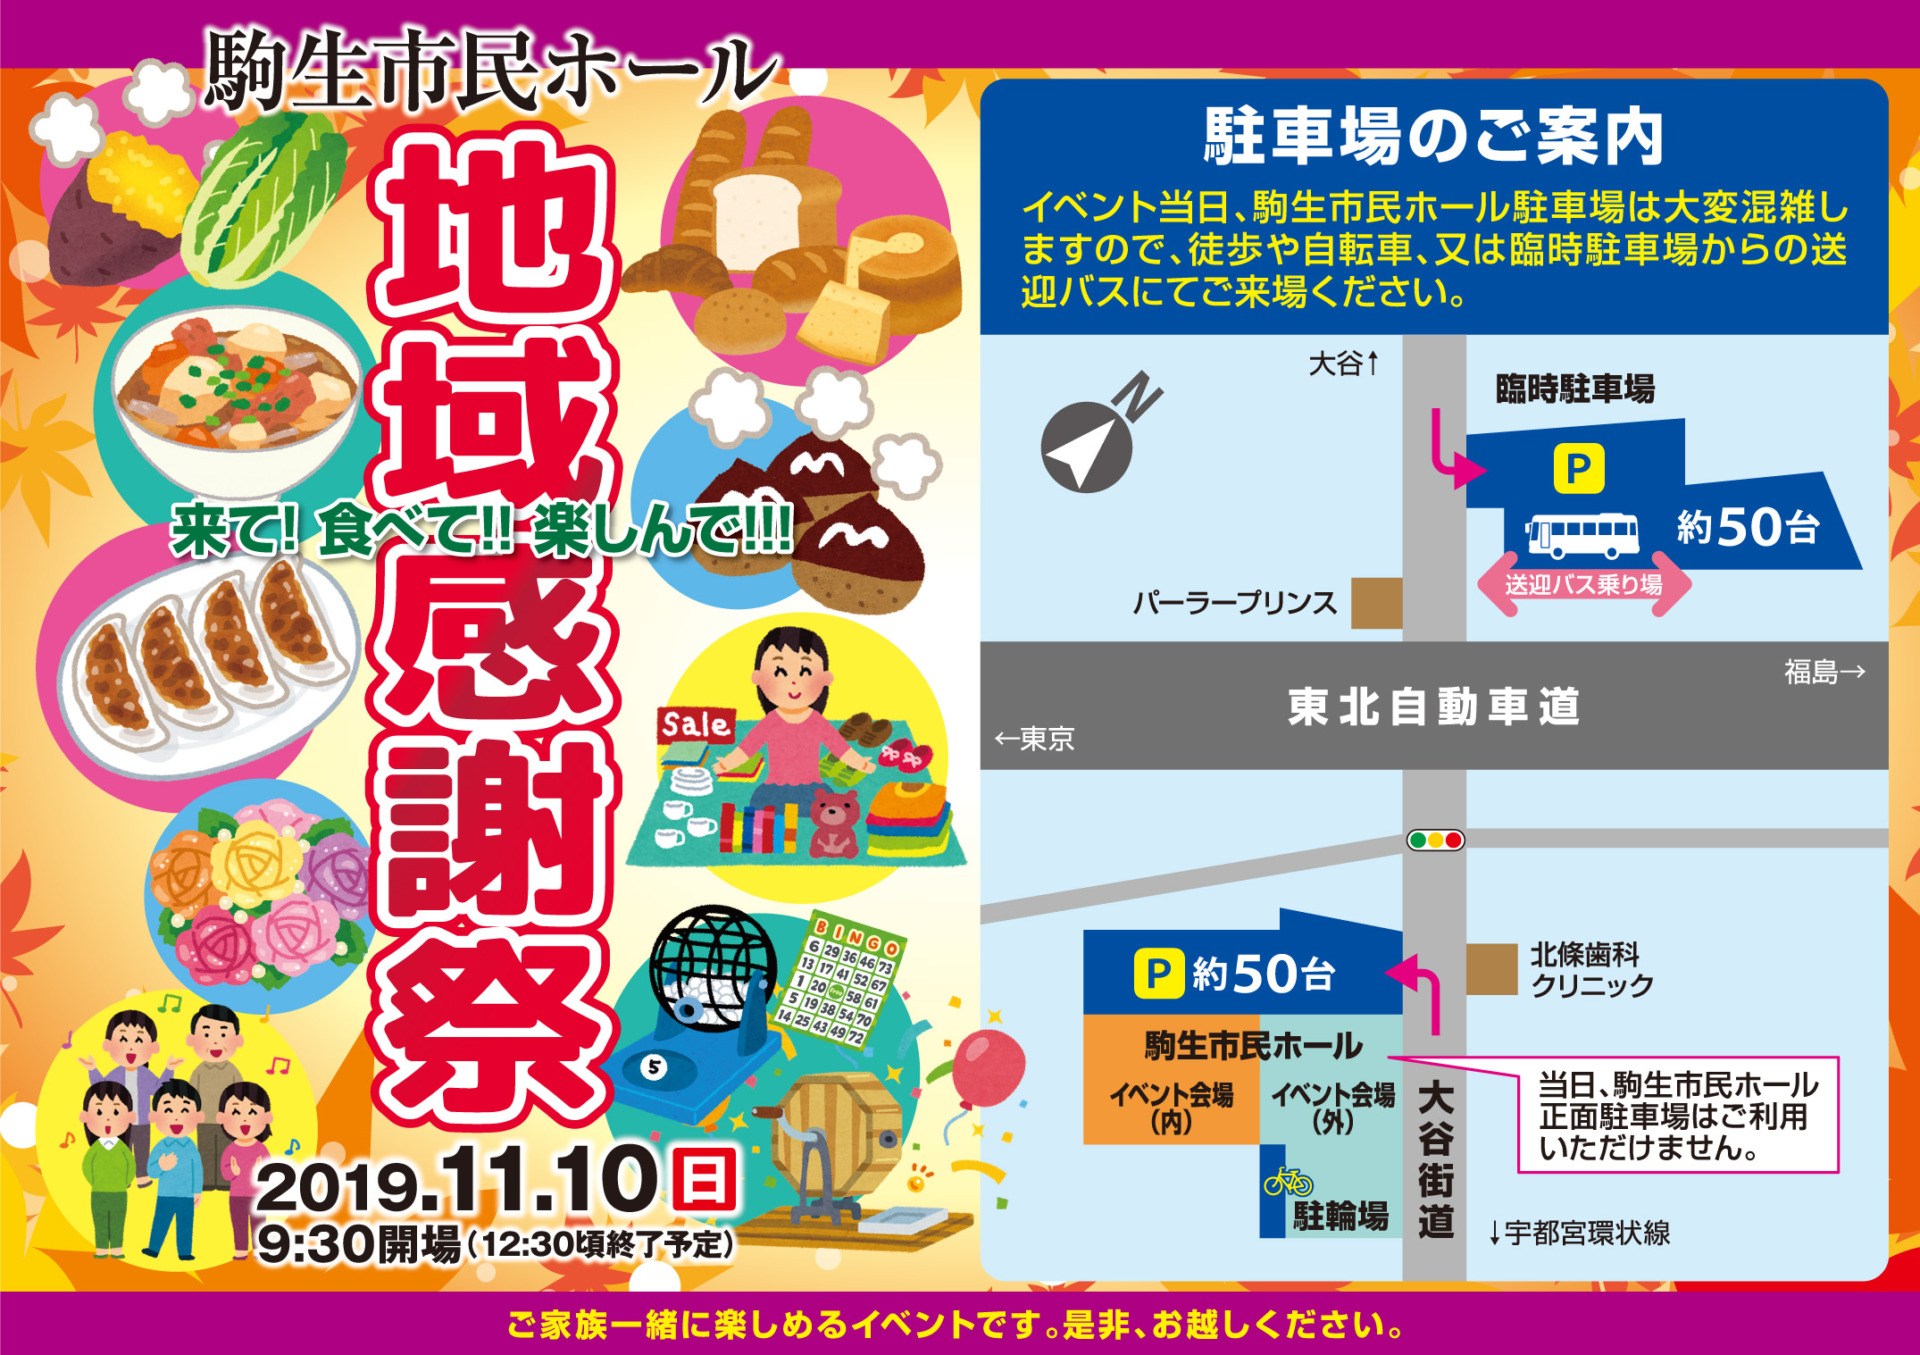 駒生市民ホール「地域感謝祭」の開催